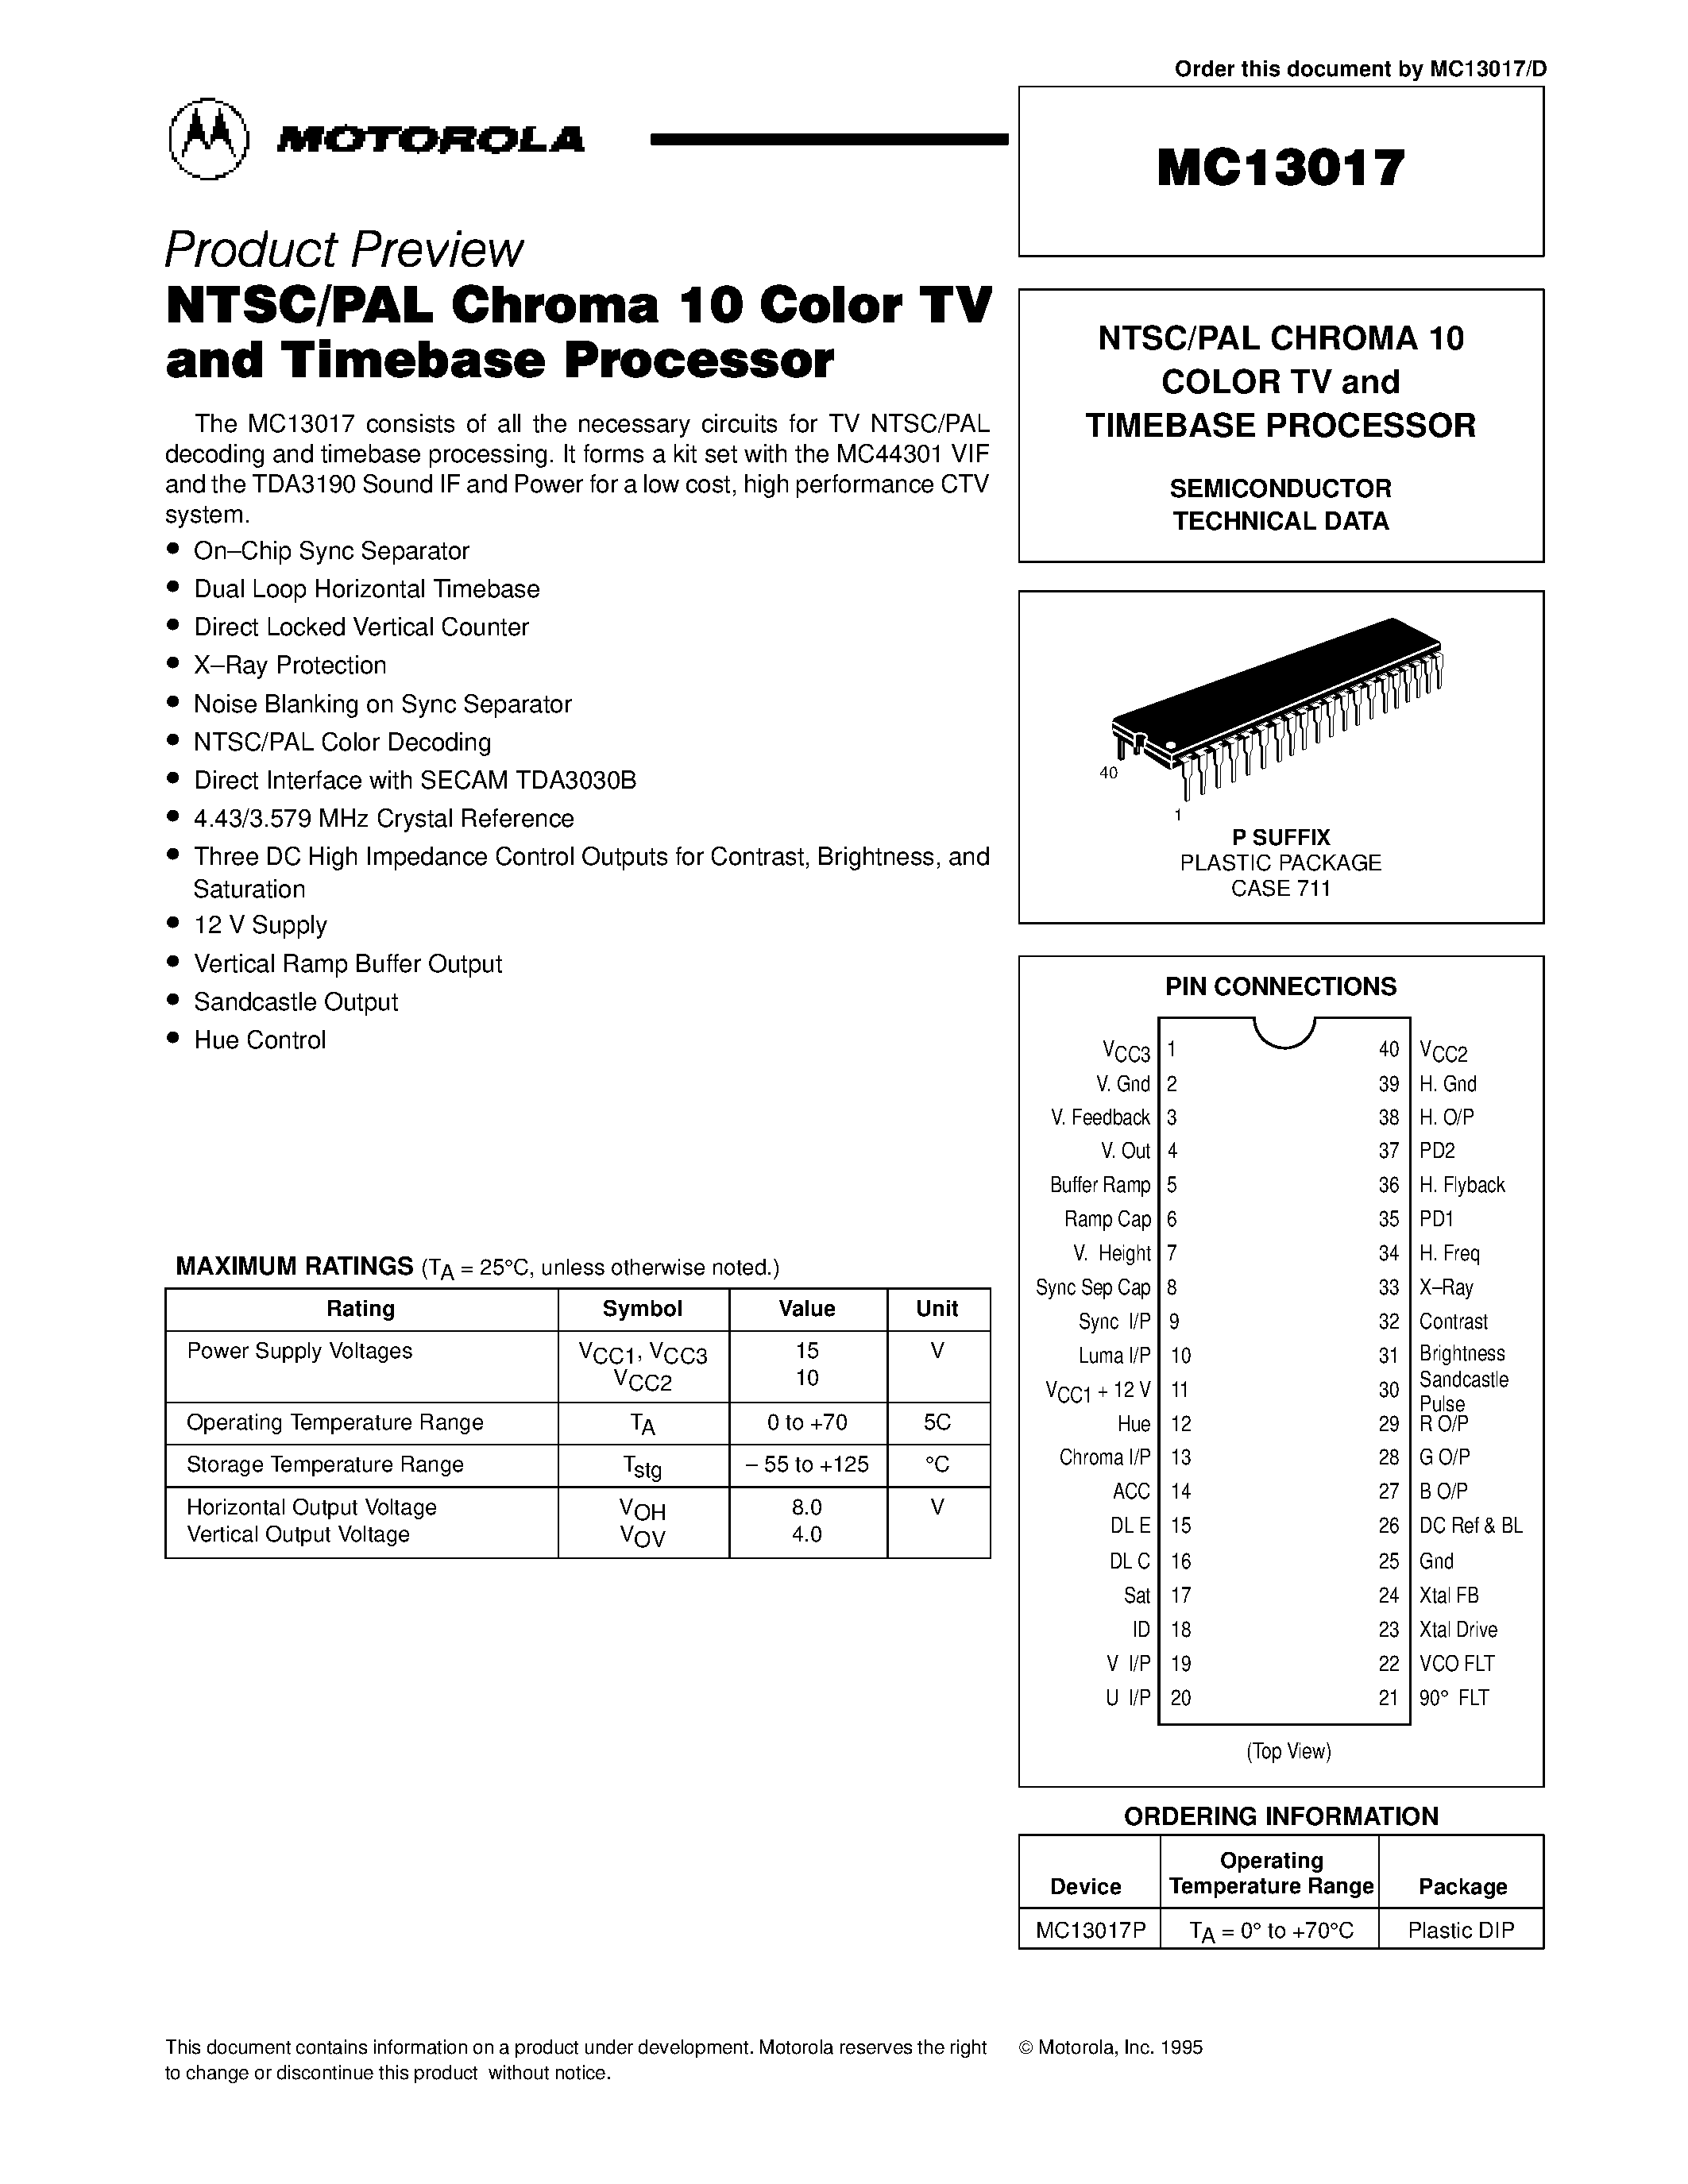 Даташит MC13017 - NTSC/PAL CHROMA 10 COLOR TV and TIMEBASE PROCESSOR страница 1